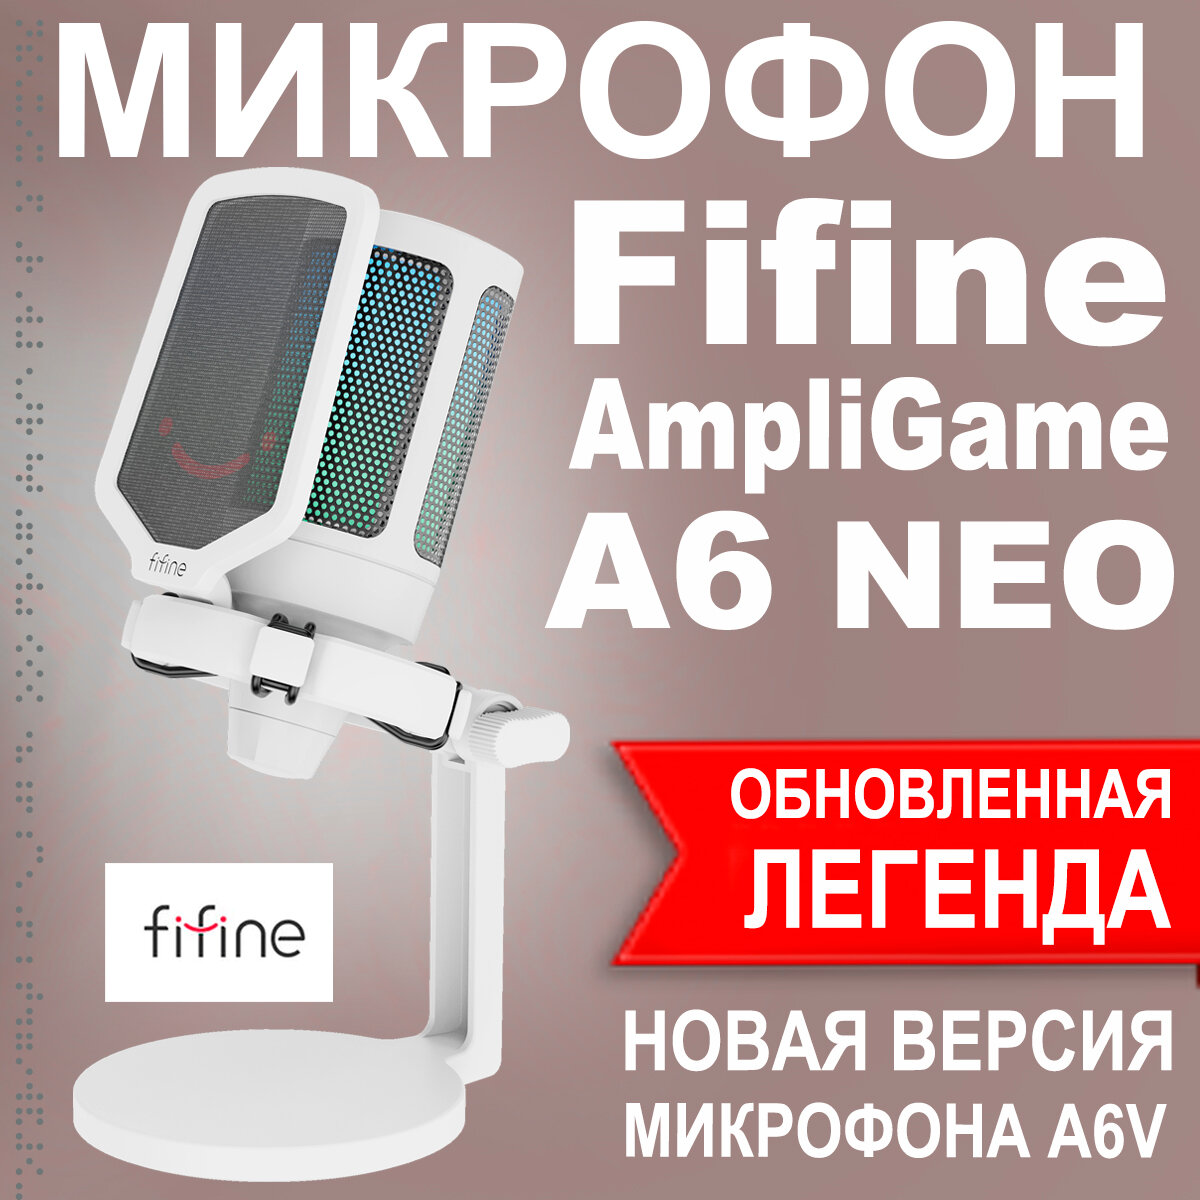 Микрофон Fifine AmpliGame A6 NEO (обновленный A6V)